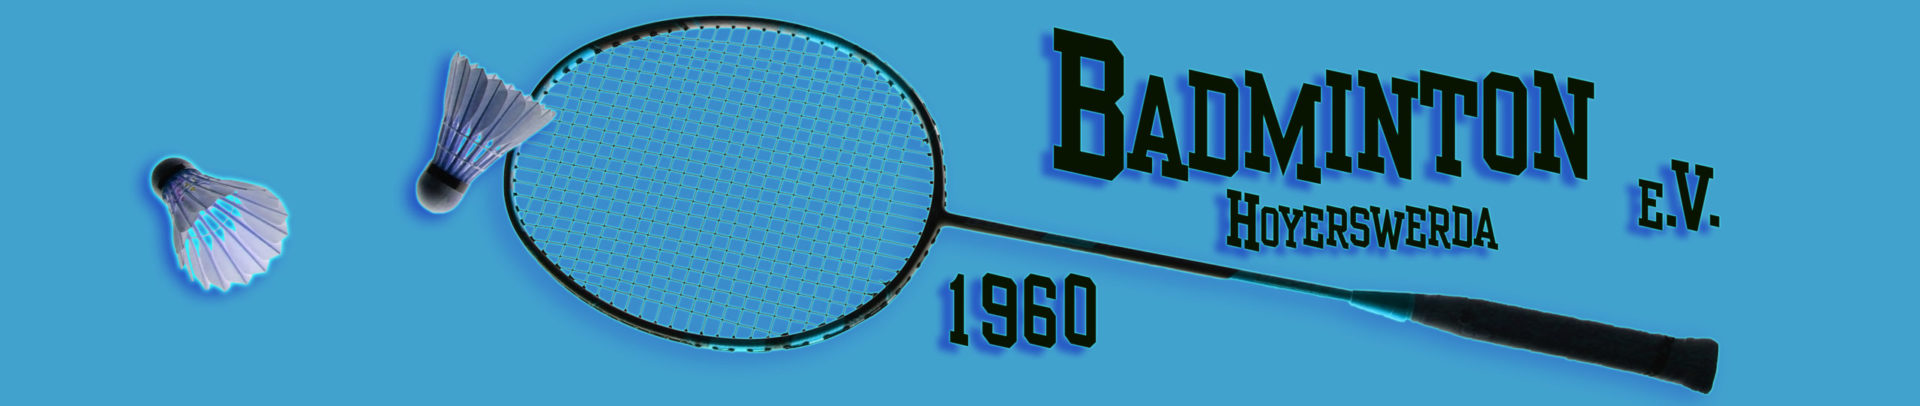 Badmintonverein Hoyerswerda 1960 e.V.